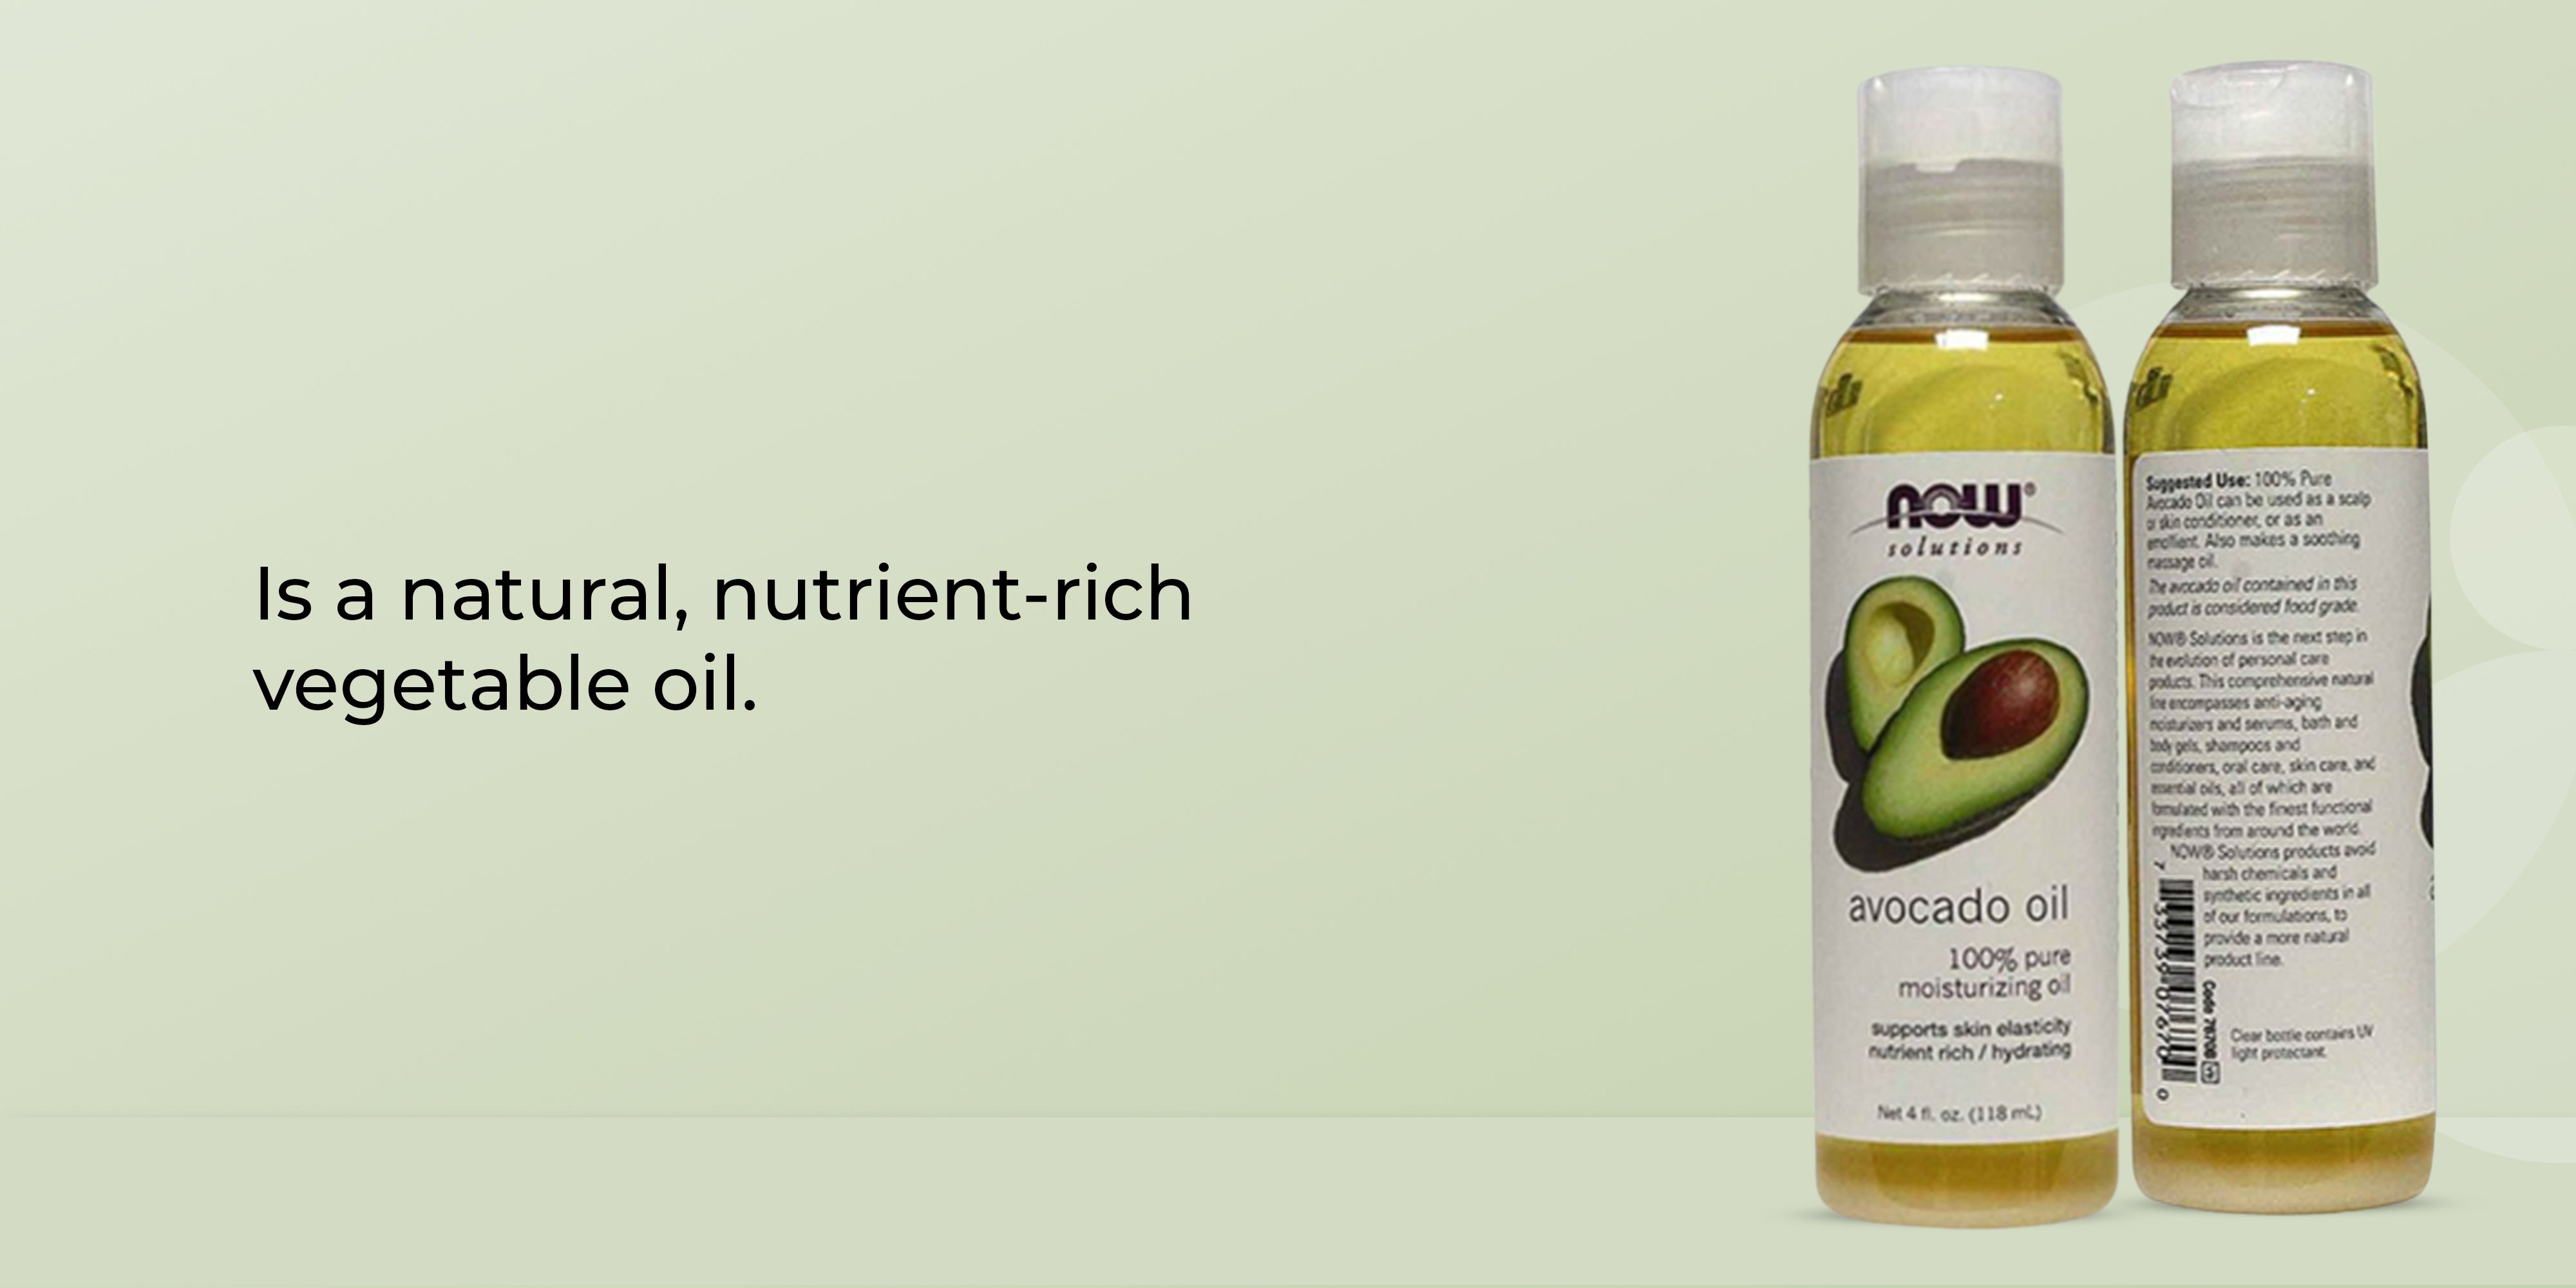 Avocado Skin Care Oil 118ml